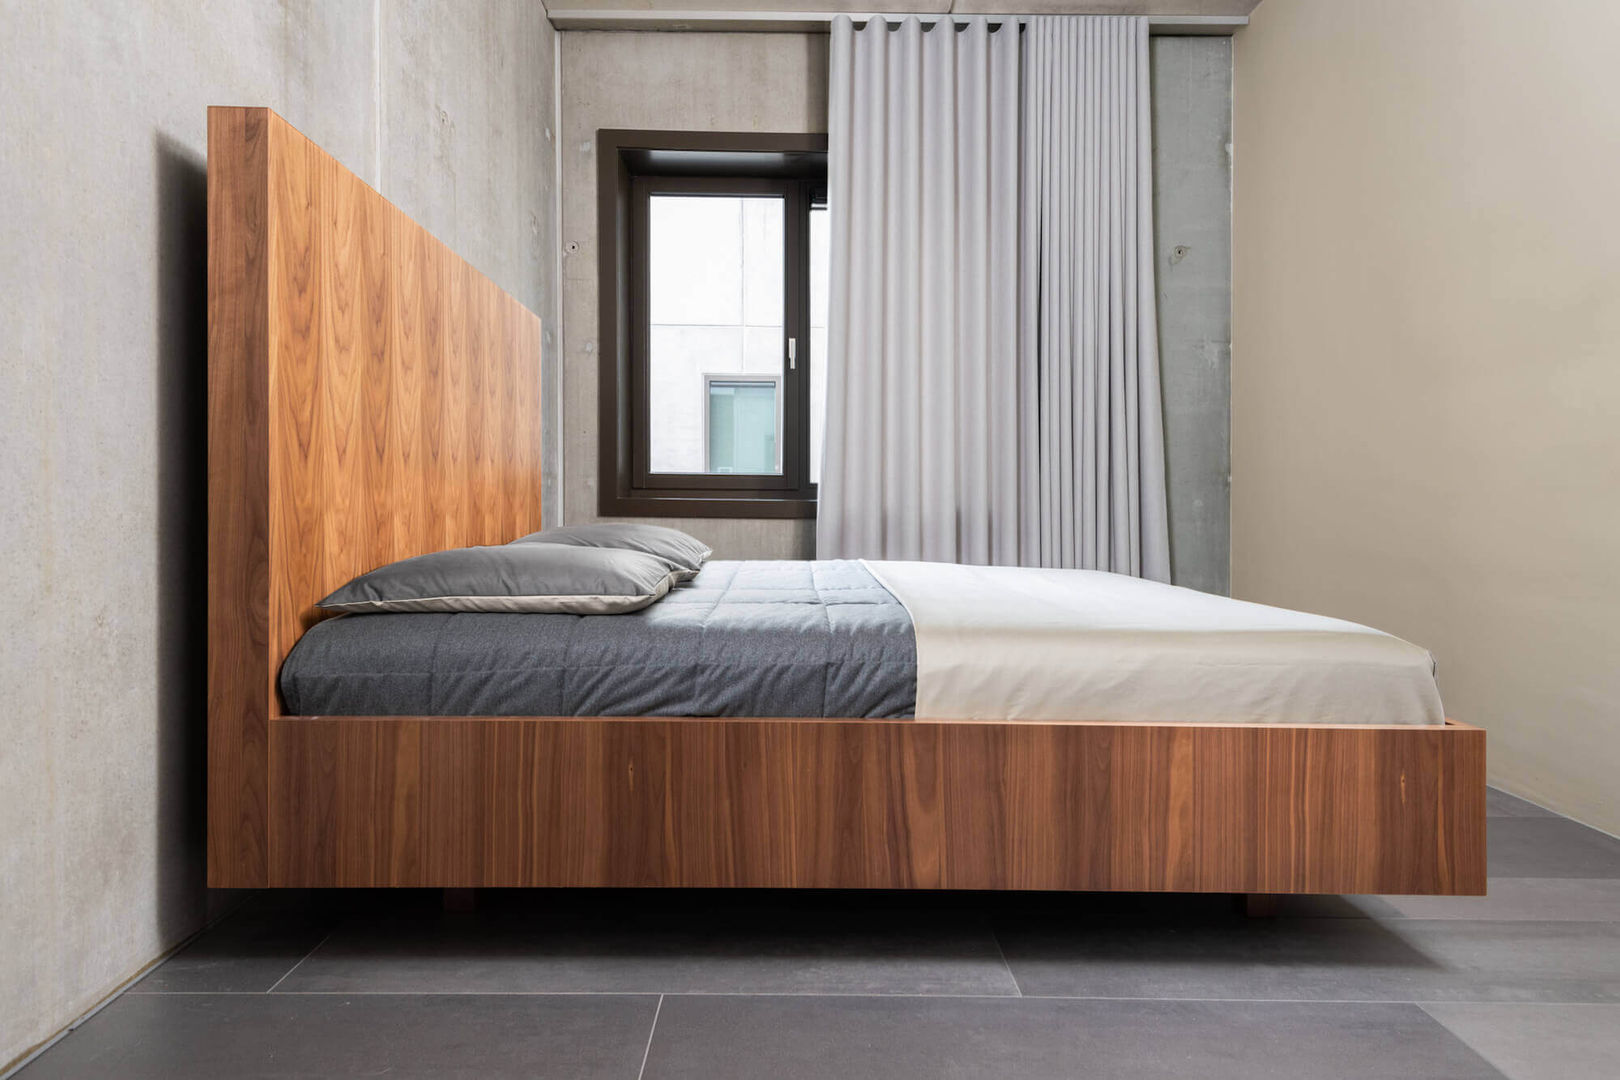 Houten design bed De Suite Industriële slaapkamers Hout Hout Houten bed, design bed,Bedden en hoofdeinden